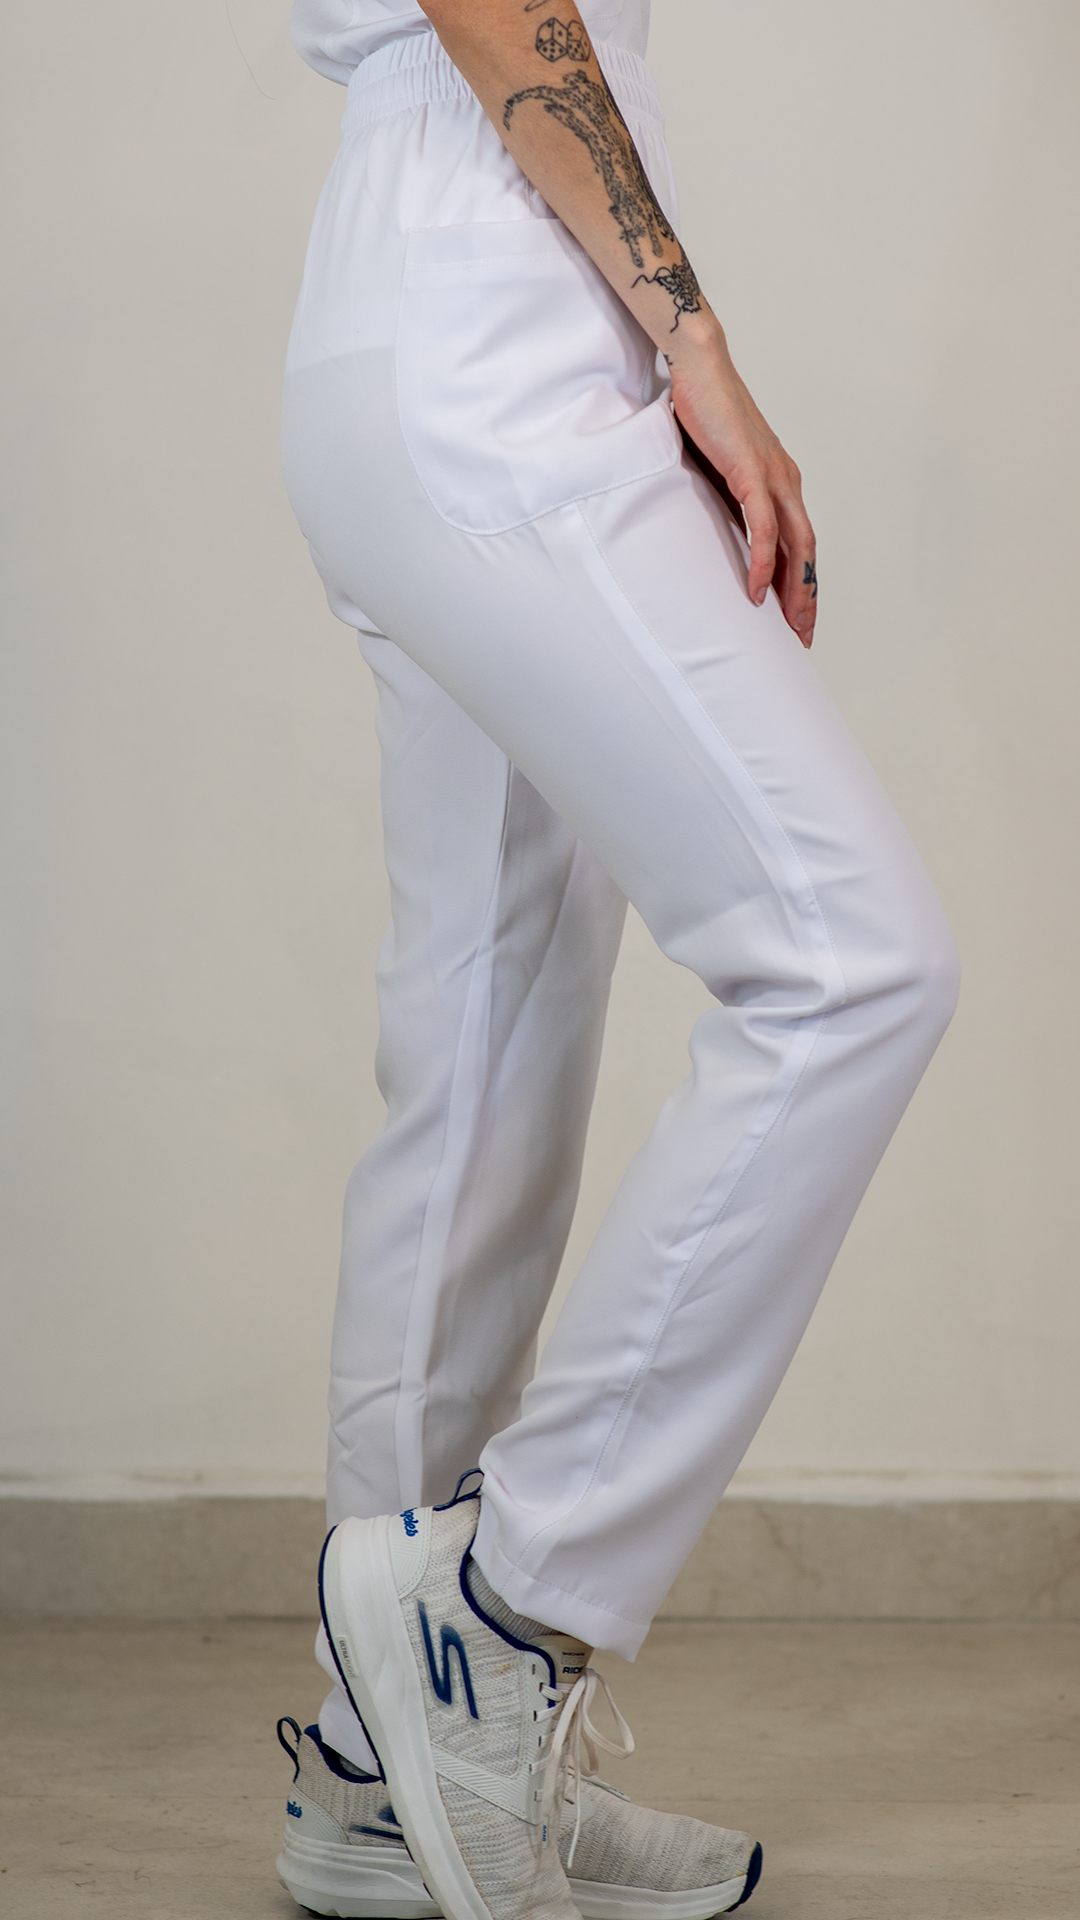 Pantalón 401 Mujer 2 Bolsas FW Blanco.